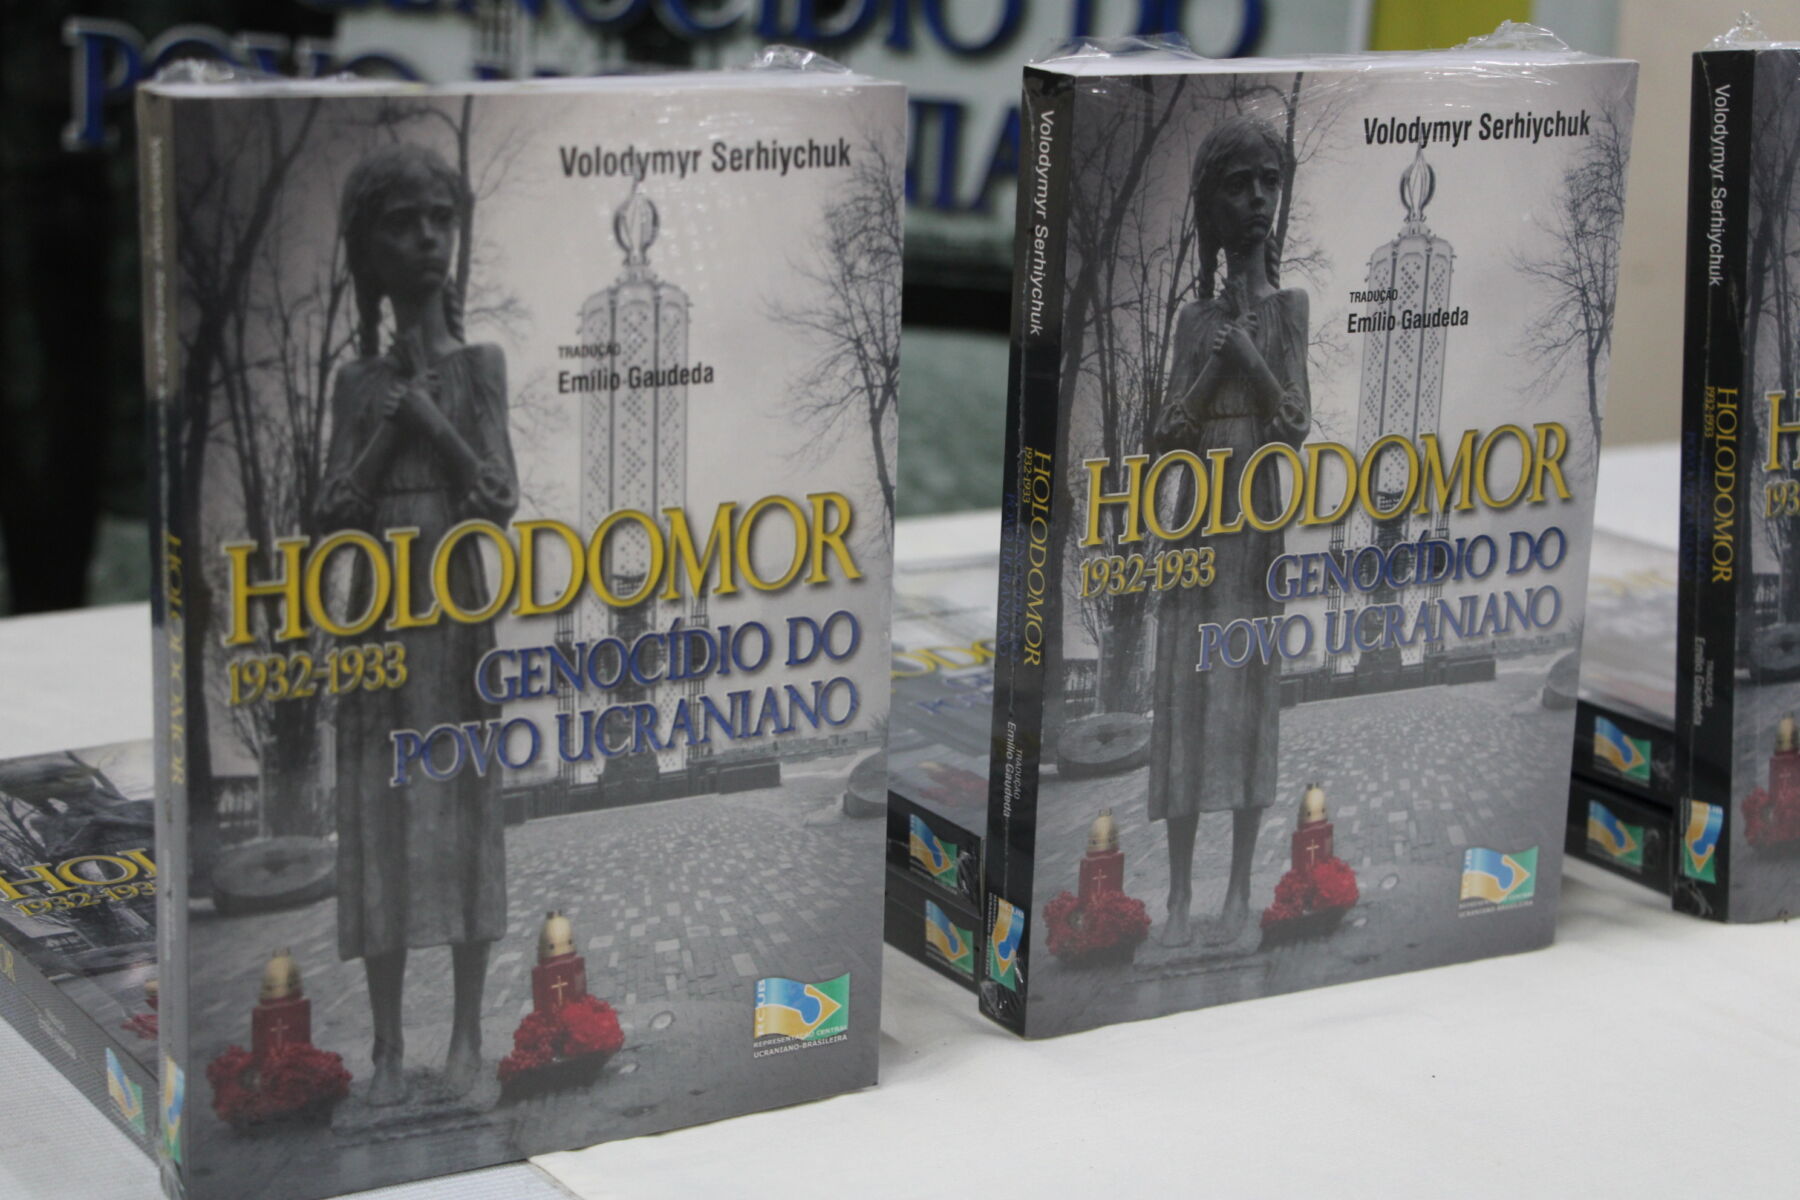 Departamento de Letras promove lançamento do livro sobre “Holodomor 1932-1933”